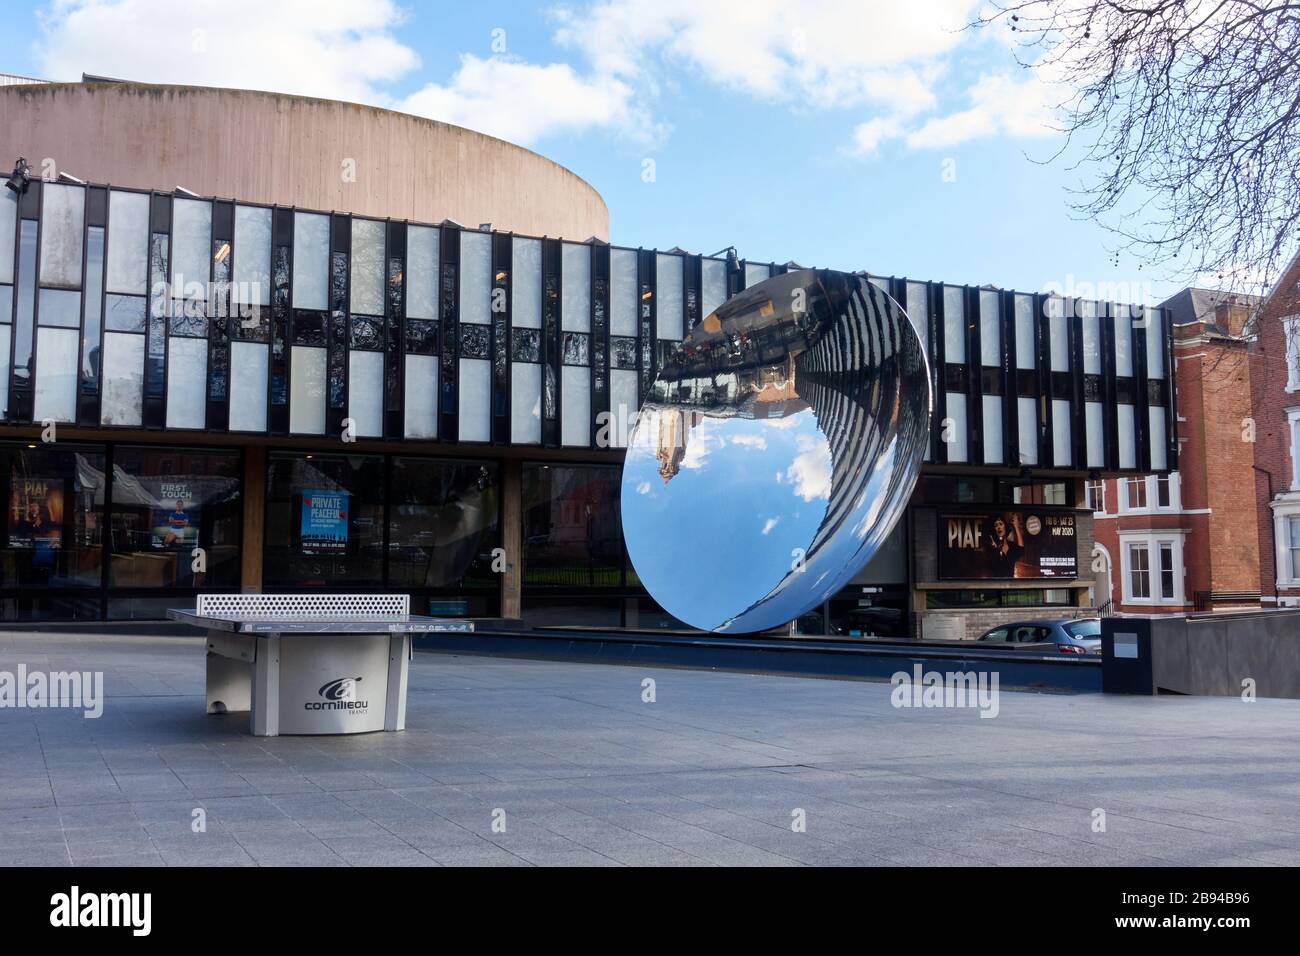 The Sky Mirror Nottingham une sculpture publique d'Anish Kapoor à l'extérieur du théâtre Playhouse à Wellington Circus. Un plat concave de six mètres de large Banque D'Images